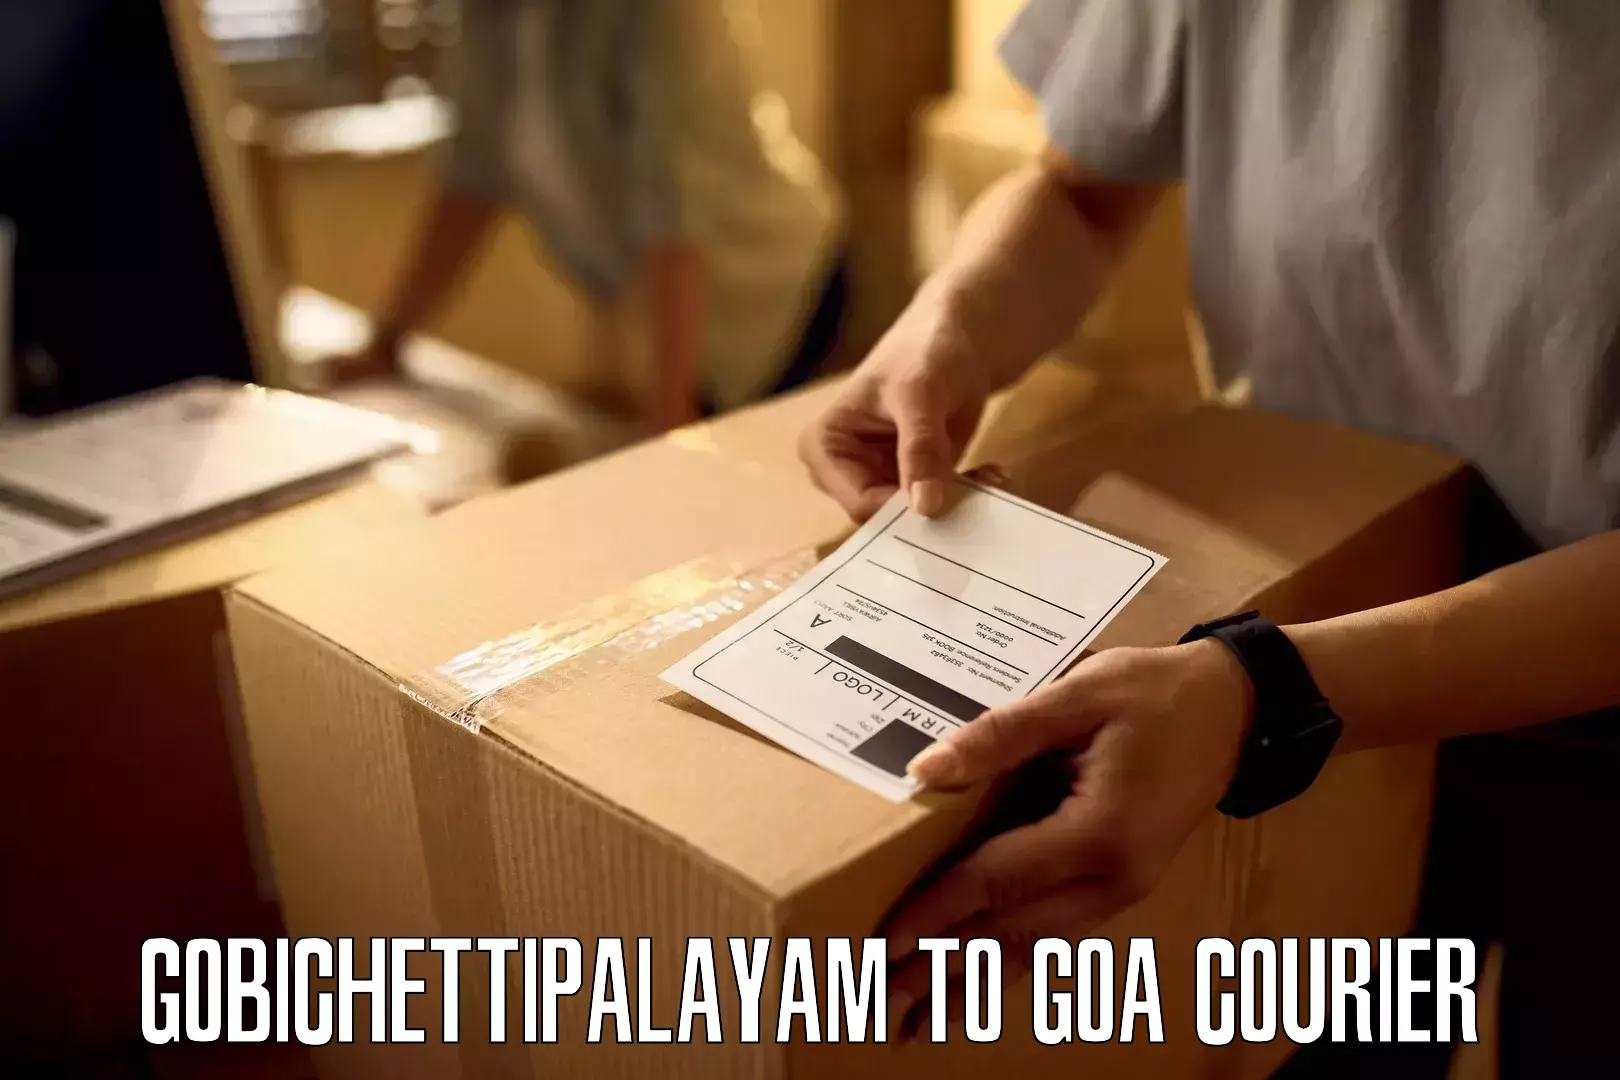 Express logistics service Gobichettipalayam to IIT Goa